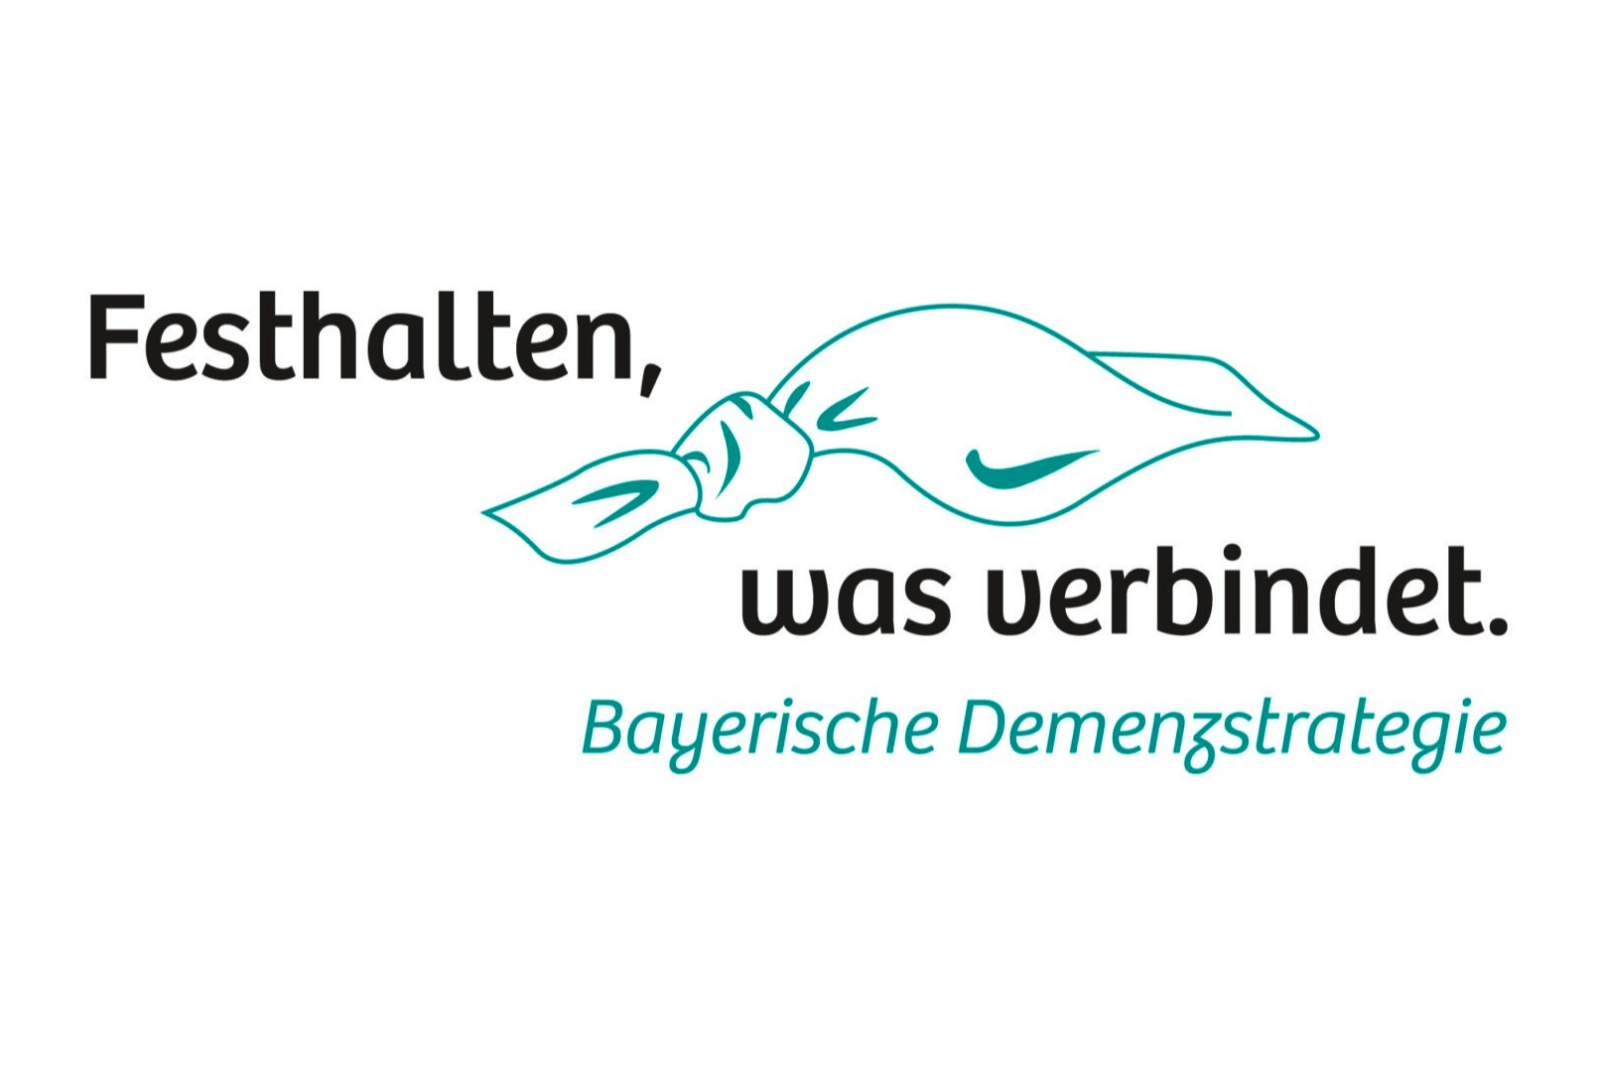 Die Bayerische Demenzstrategie – Vielfältige Möglichkeiten der Mitwirkung